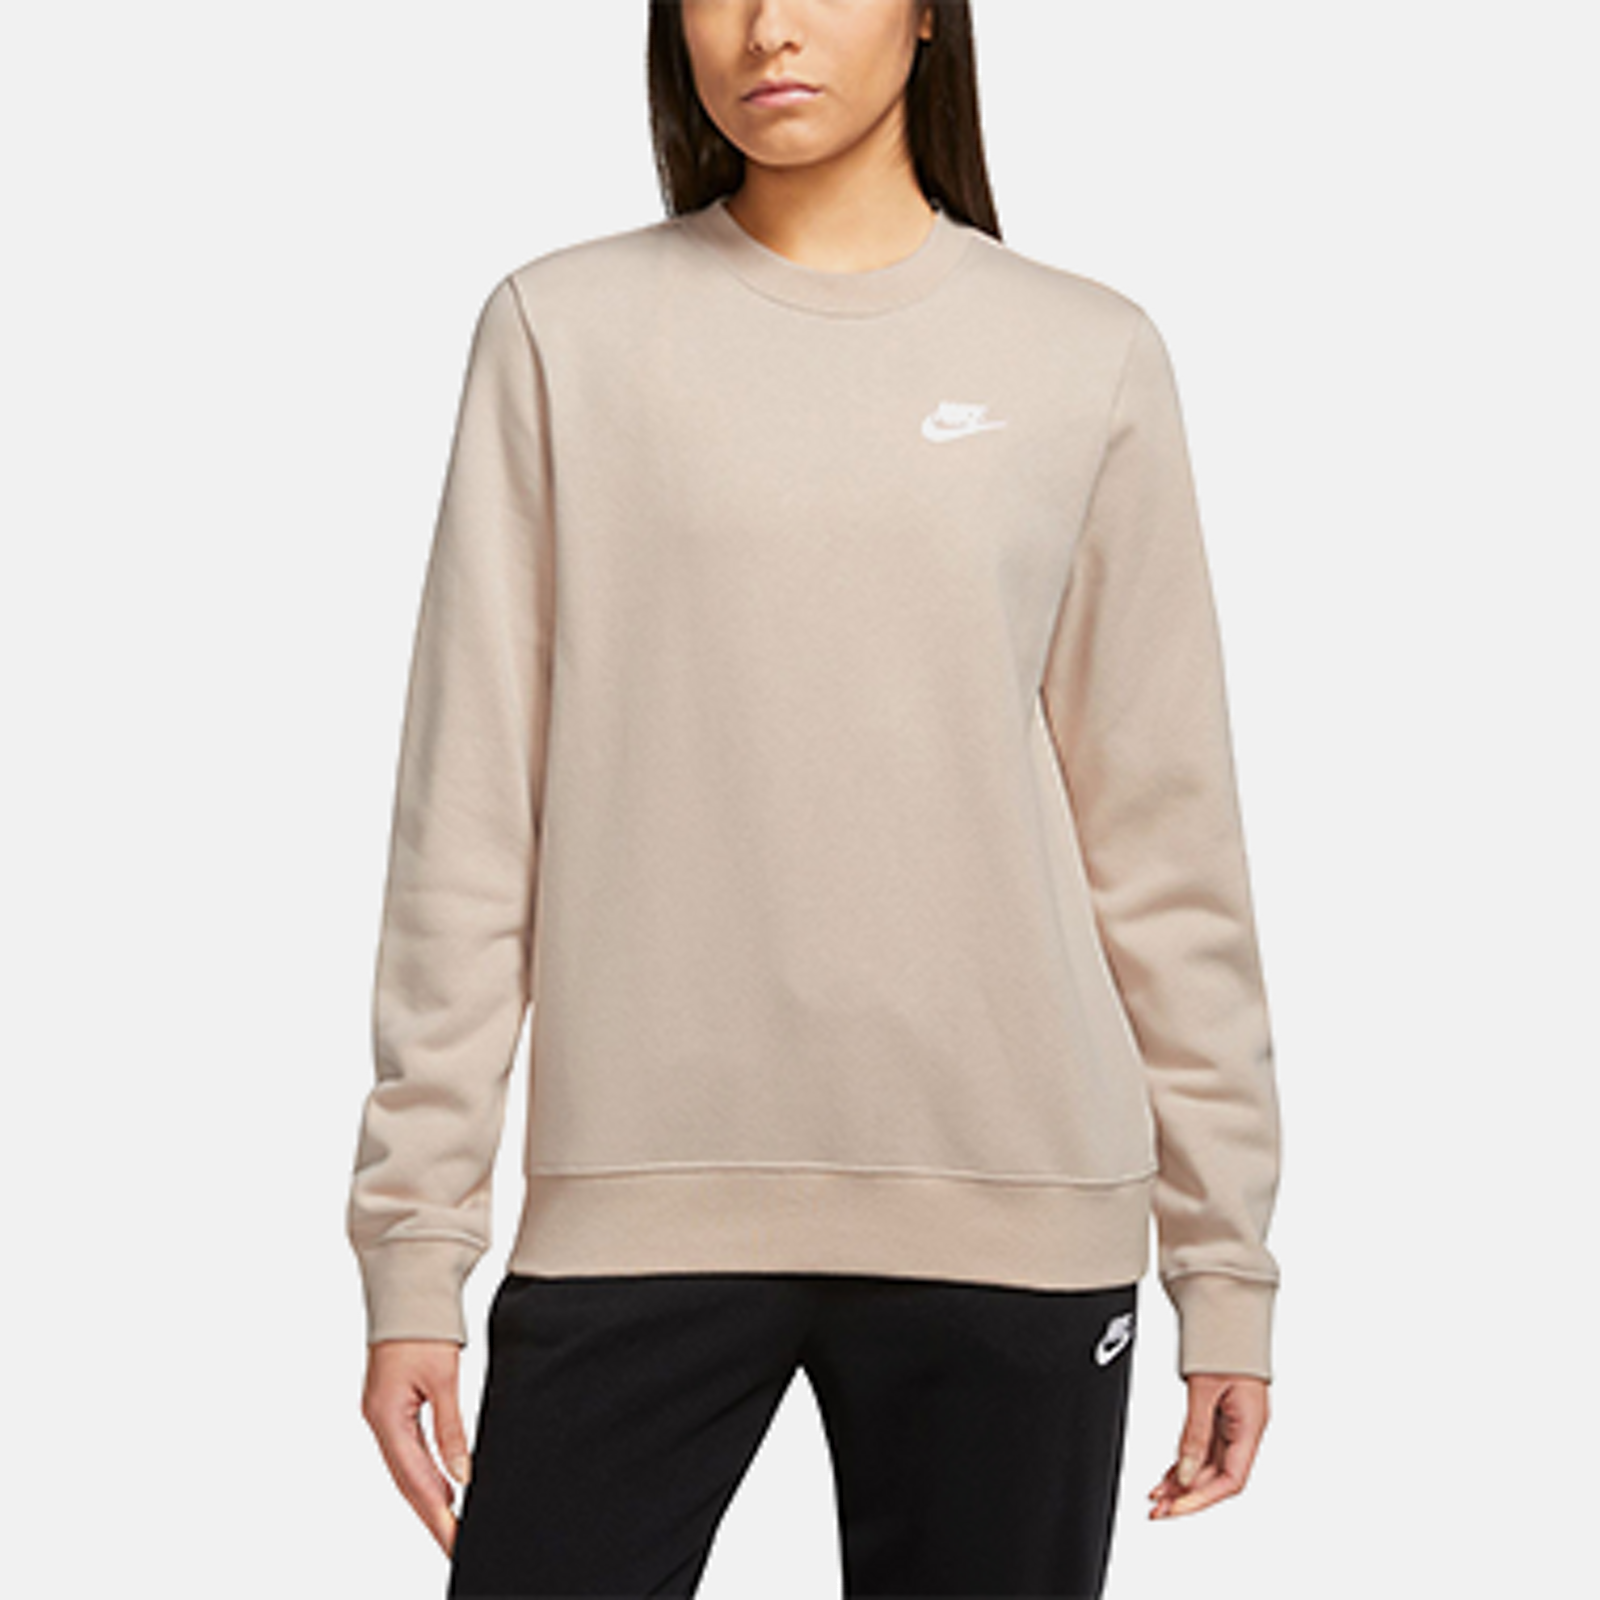 Full Zip Women's Hoodies & Sweatshirts - Macy's